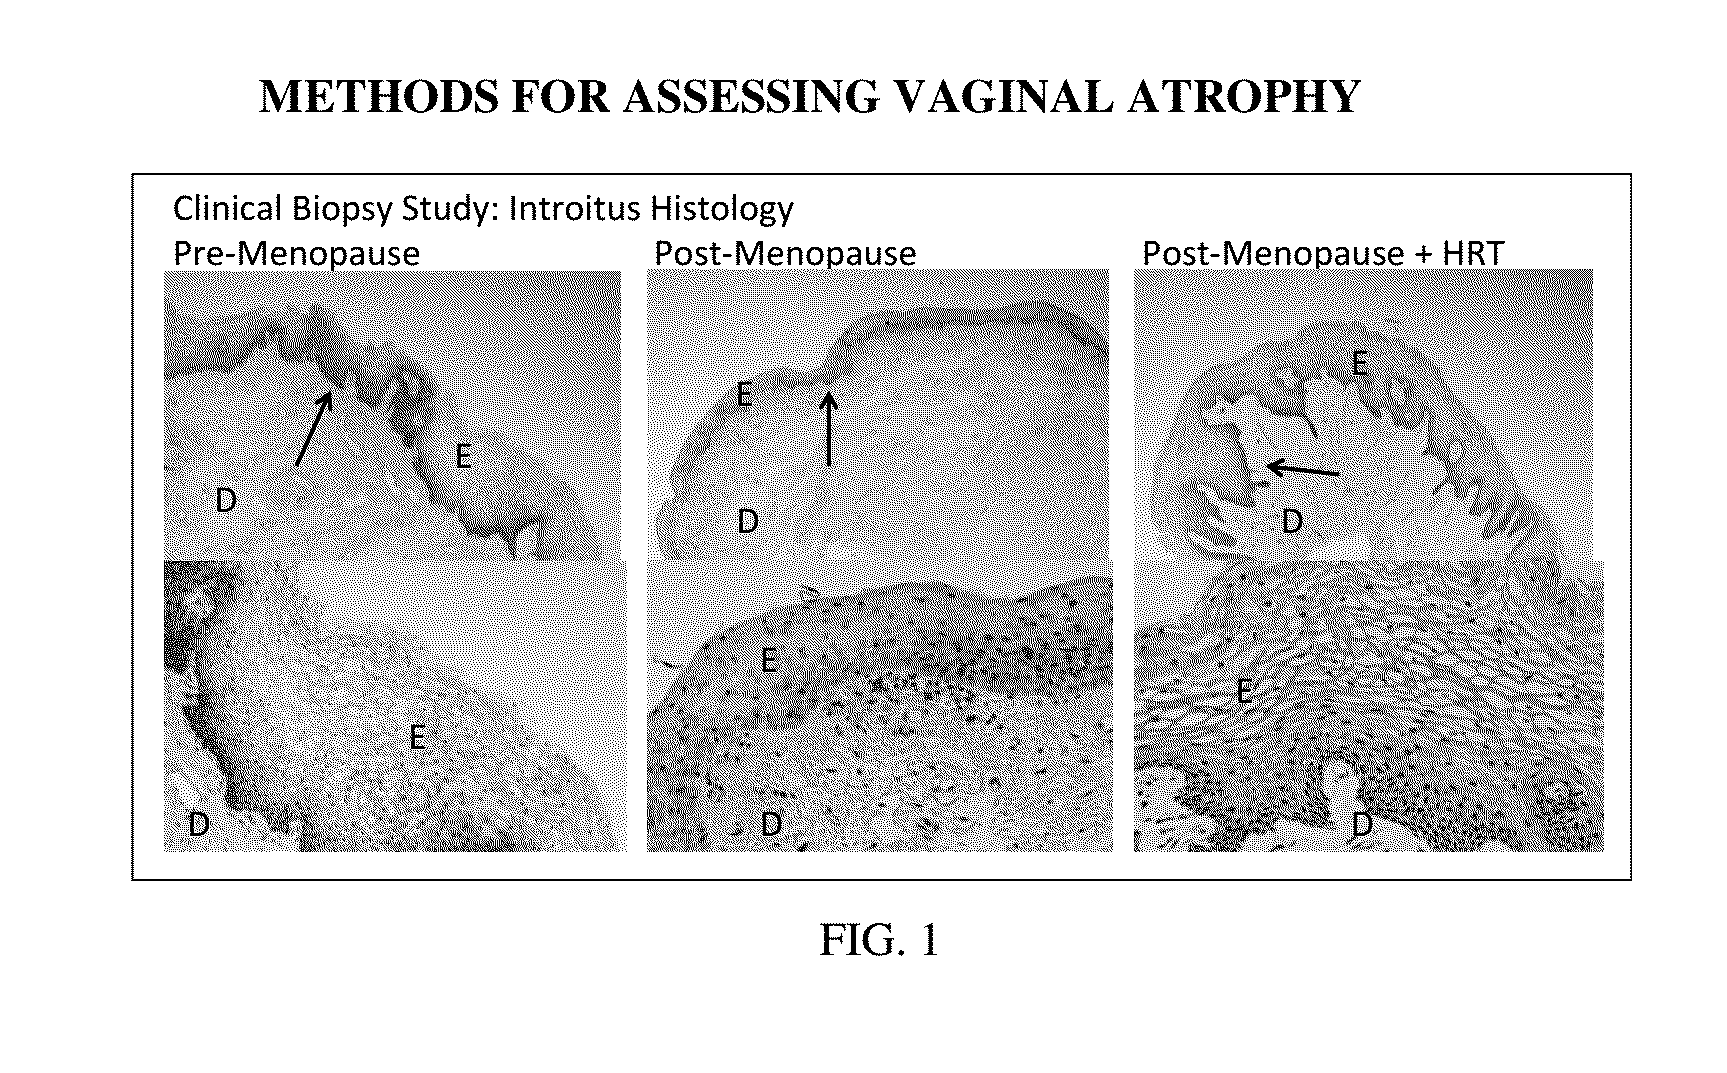 Methods for assessing vaginal atrophy